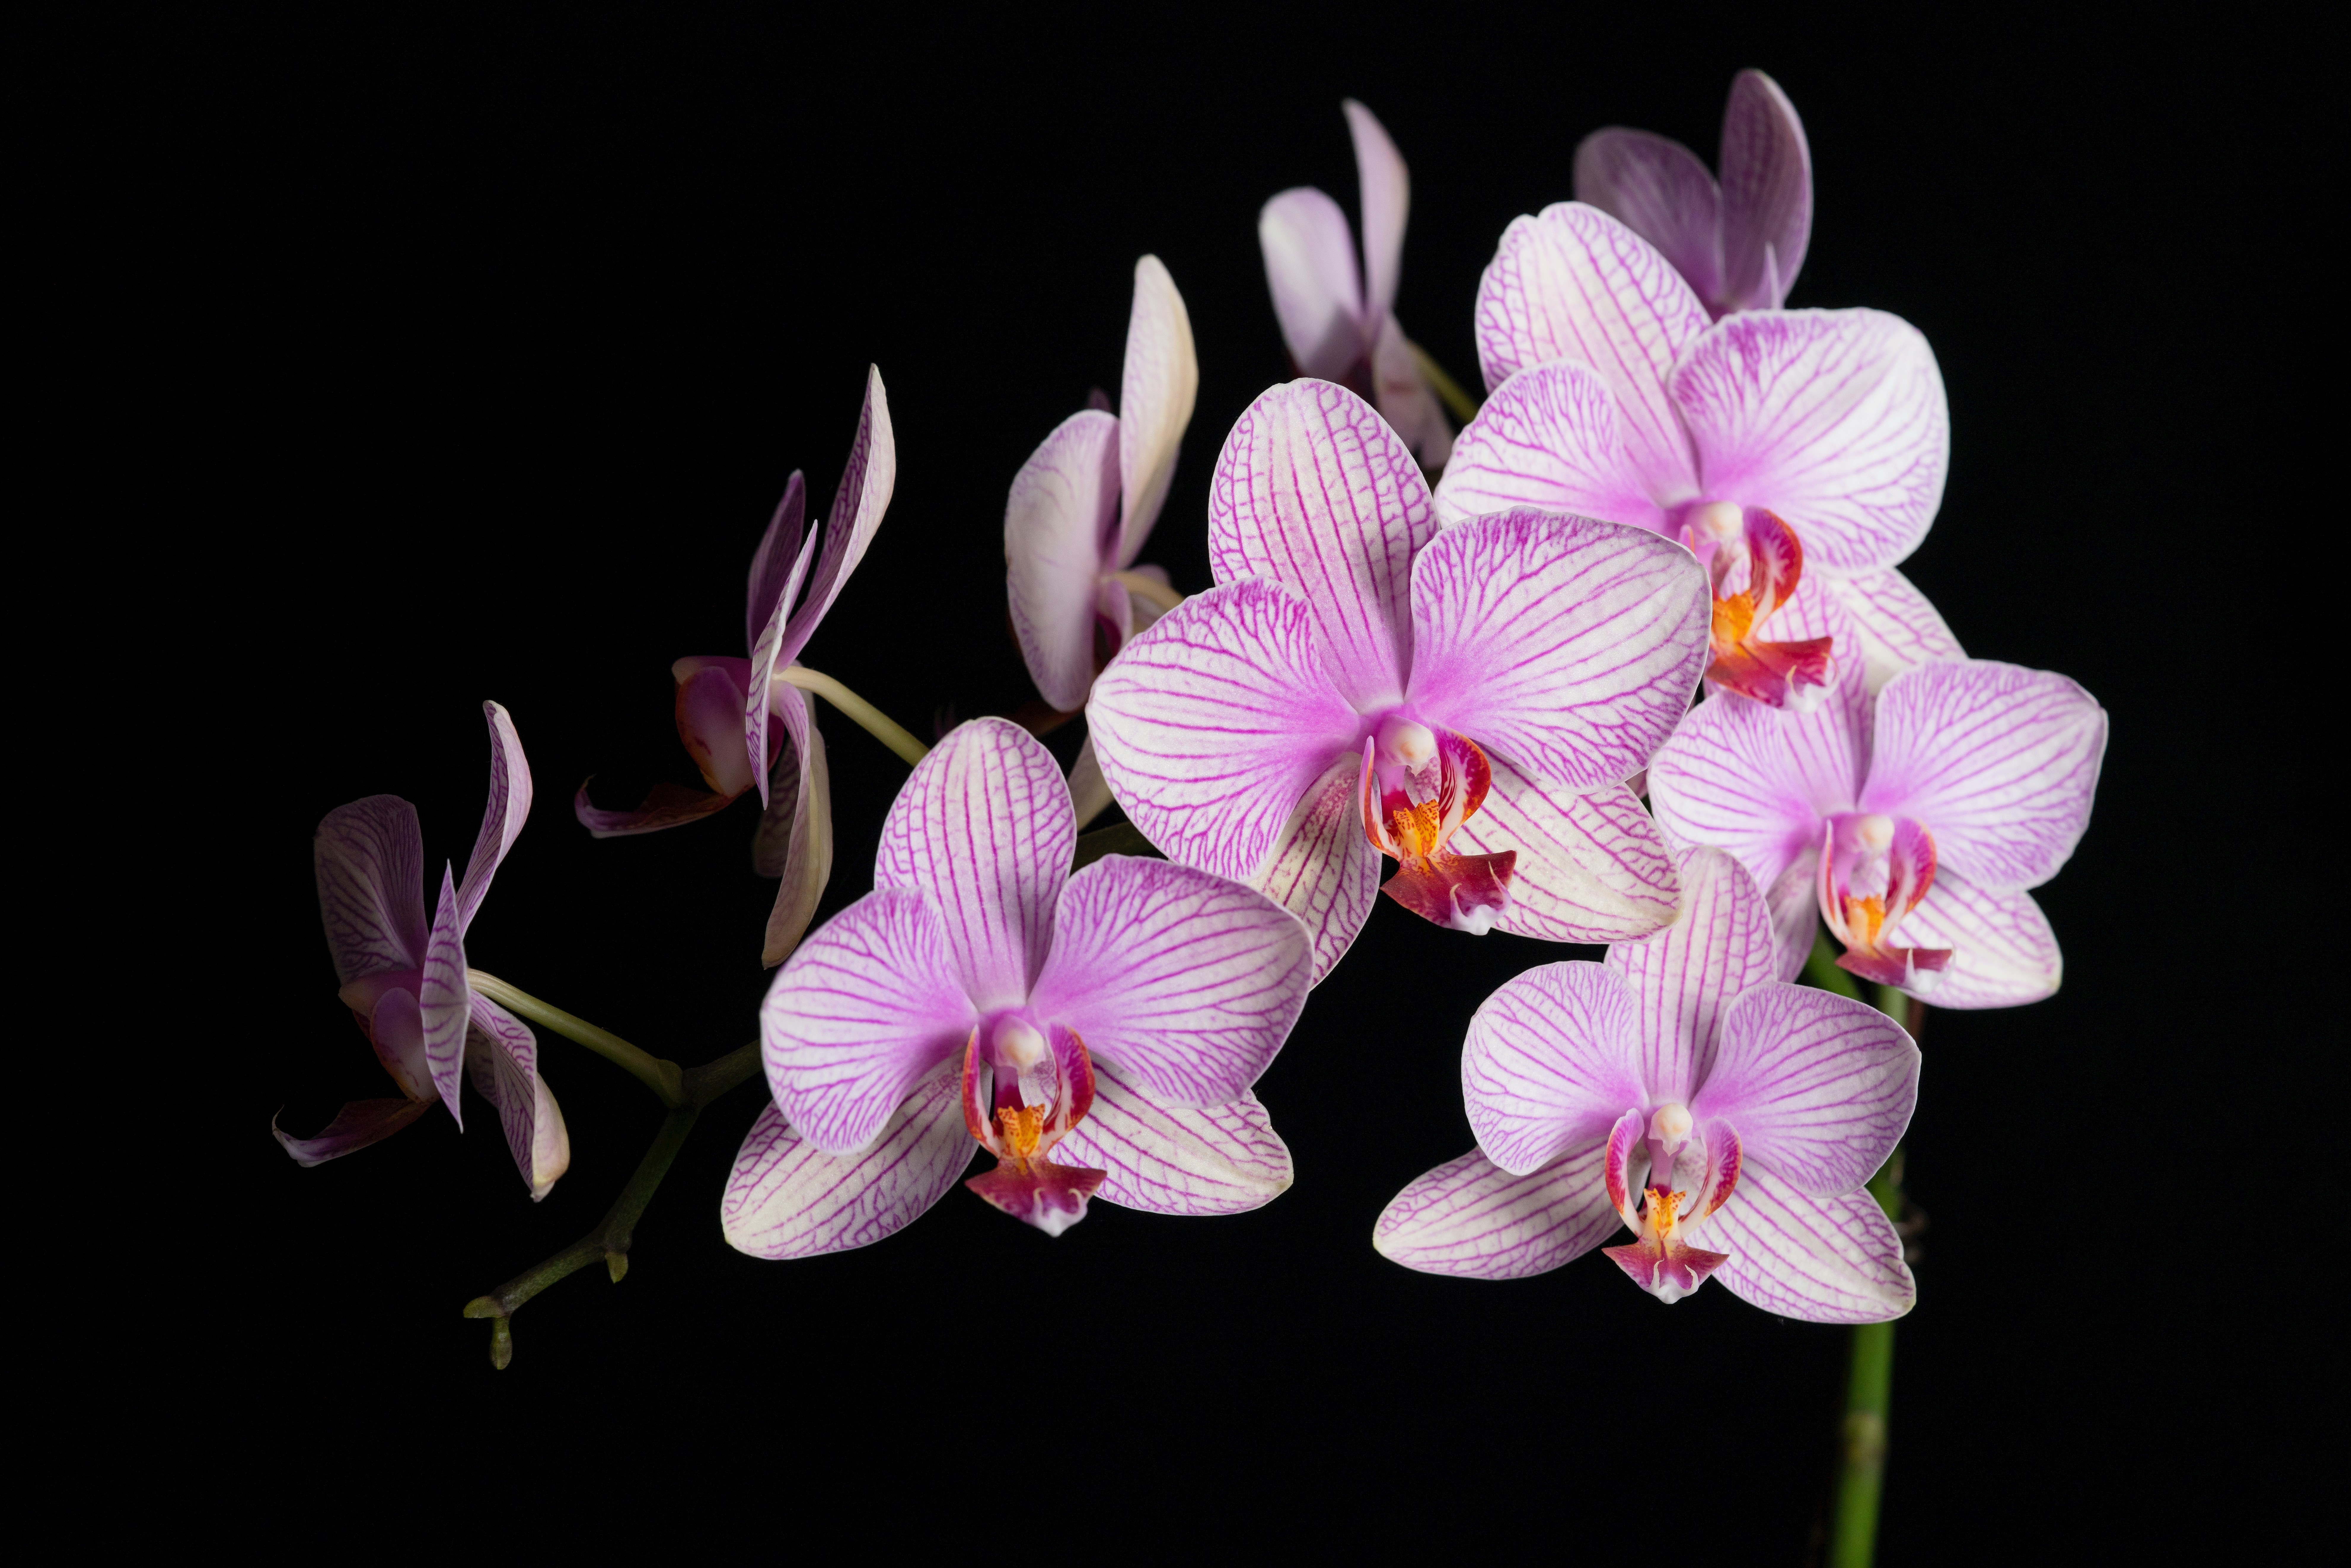 Cansado de ver suas orquídeas morrerem? Confira dicas de como cuidar dessa flor